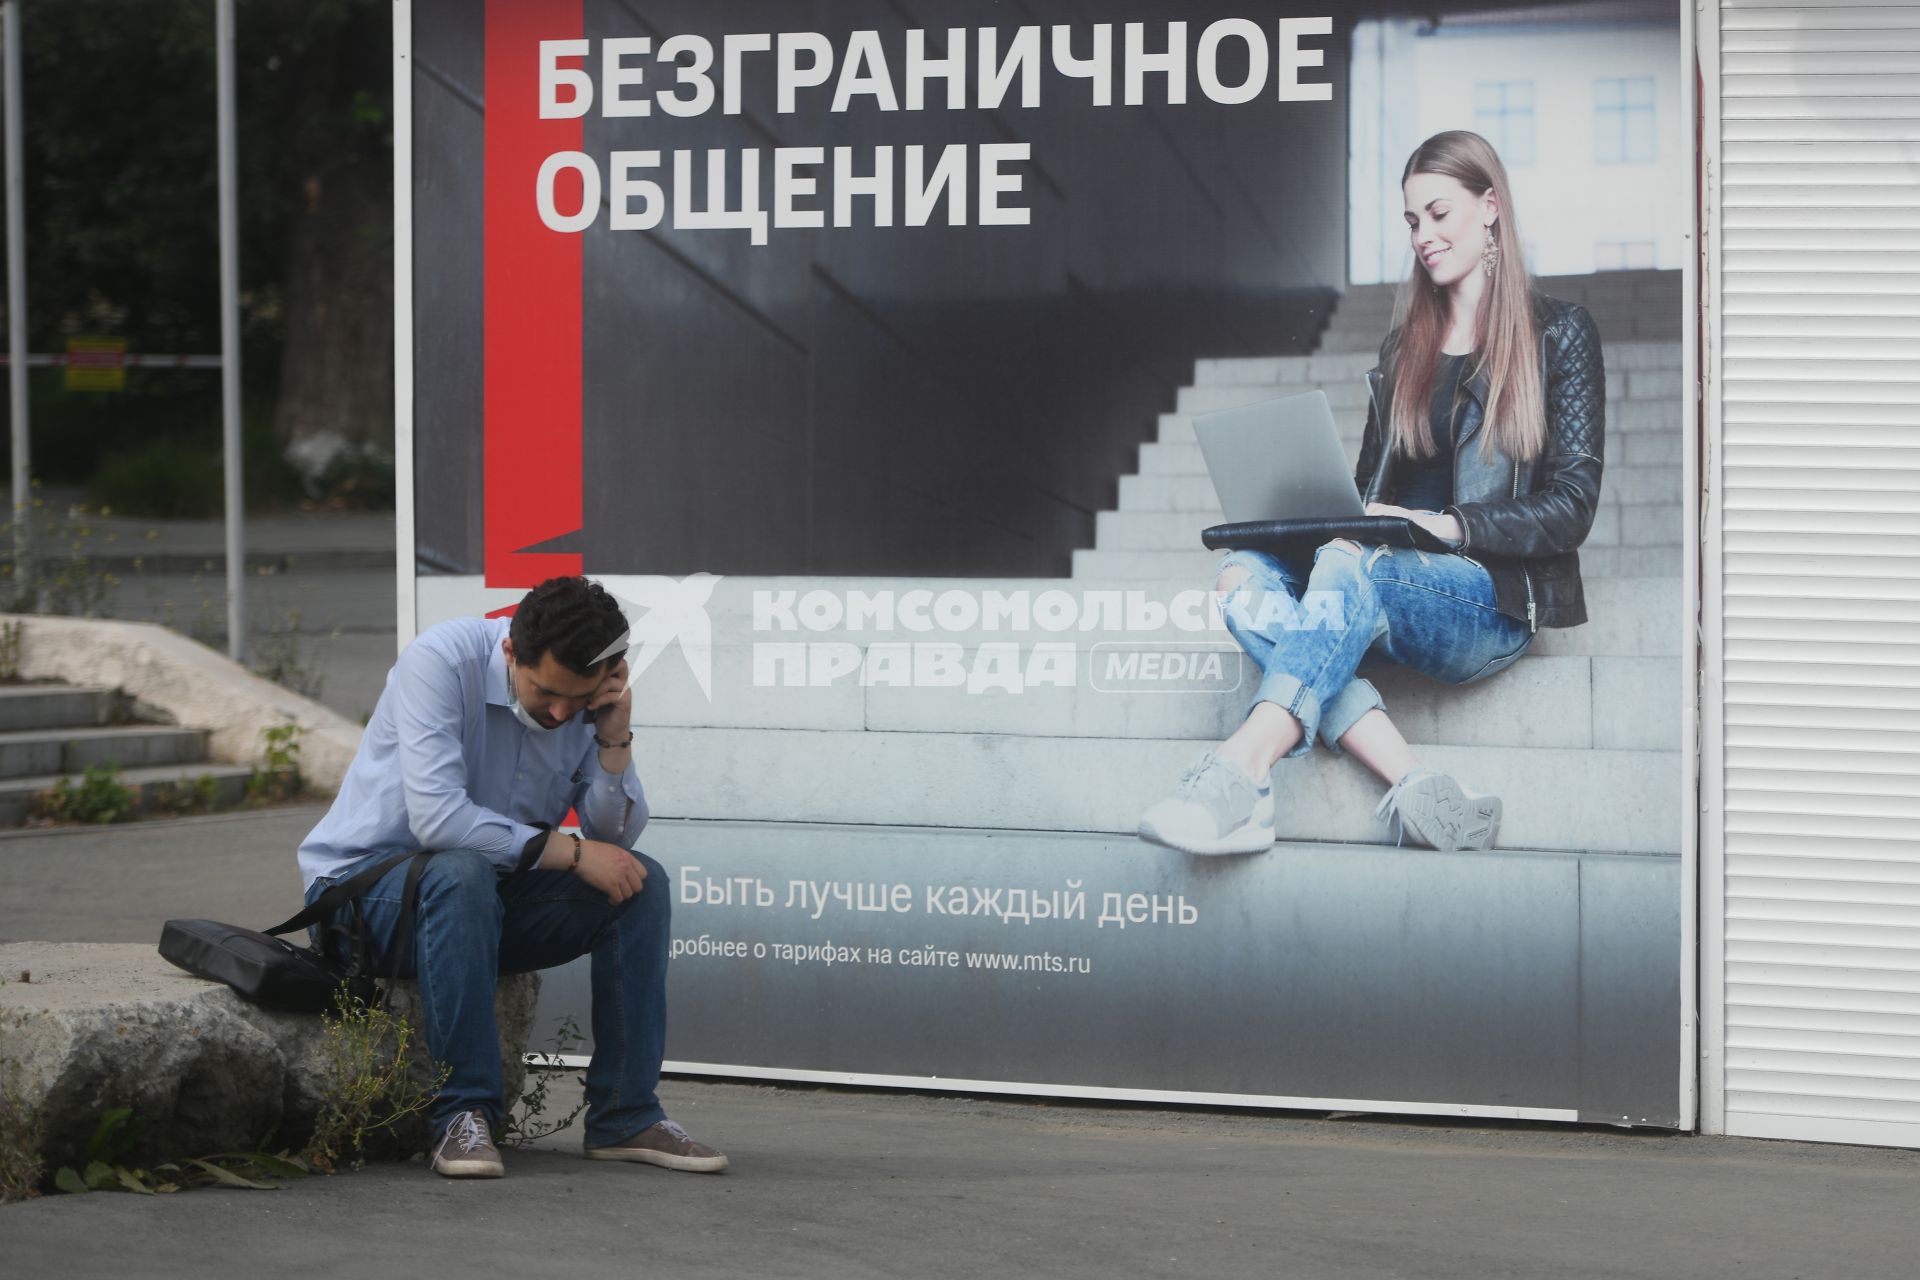 Екатеринбург. Мужчина говорит по телефону у рекламного плаката МТС, с надписью \'Безграничное общение\'